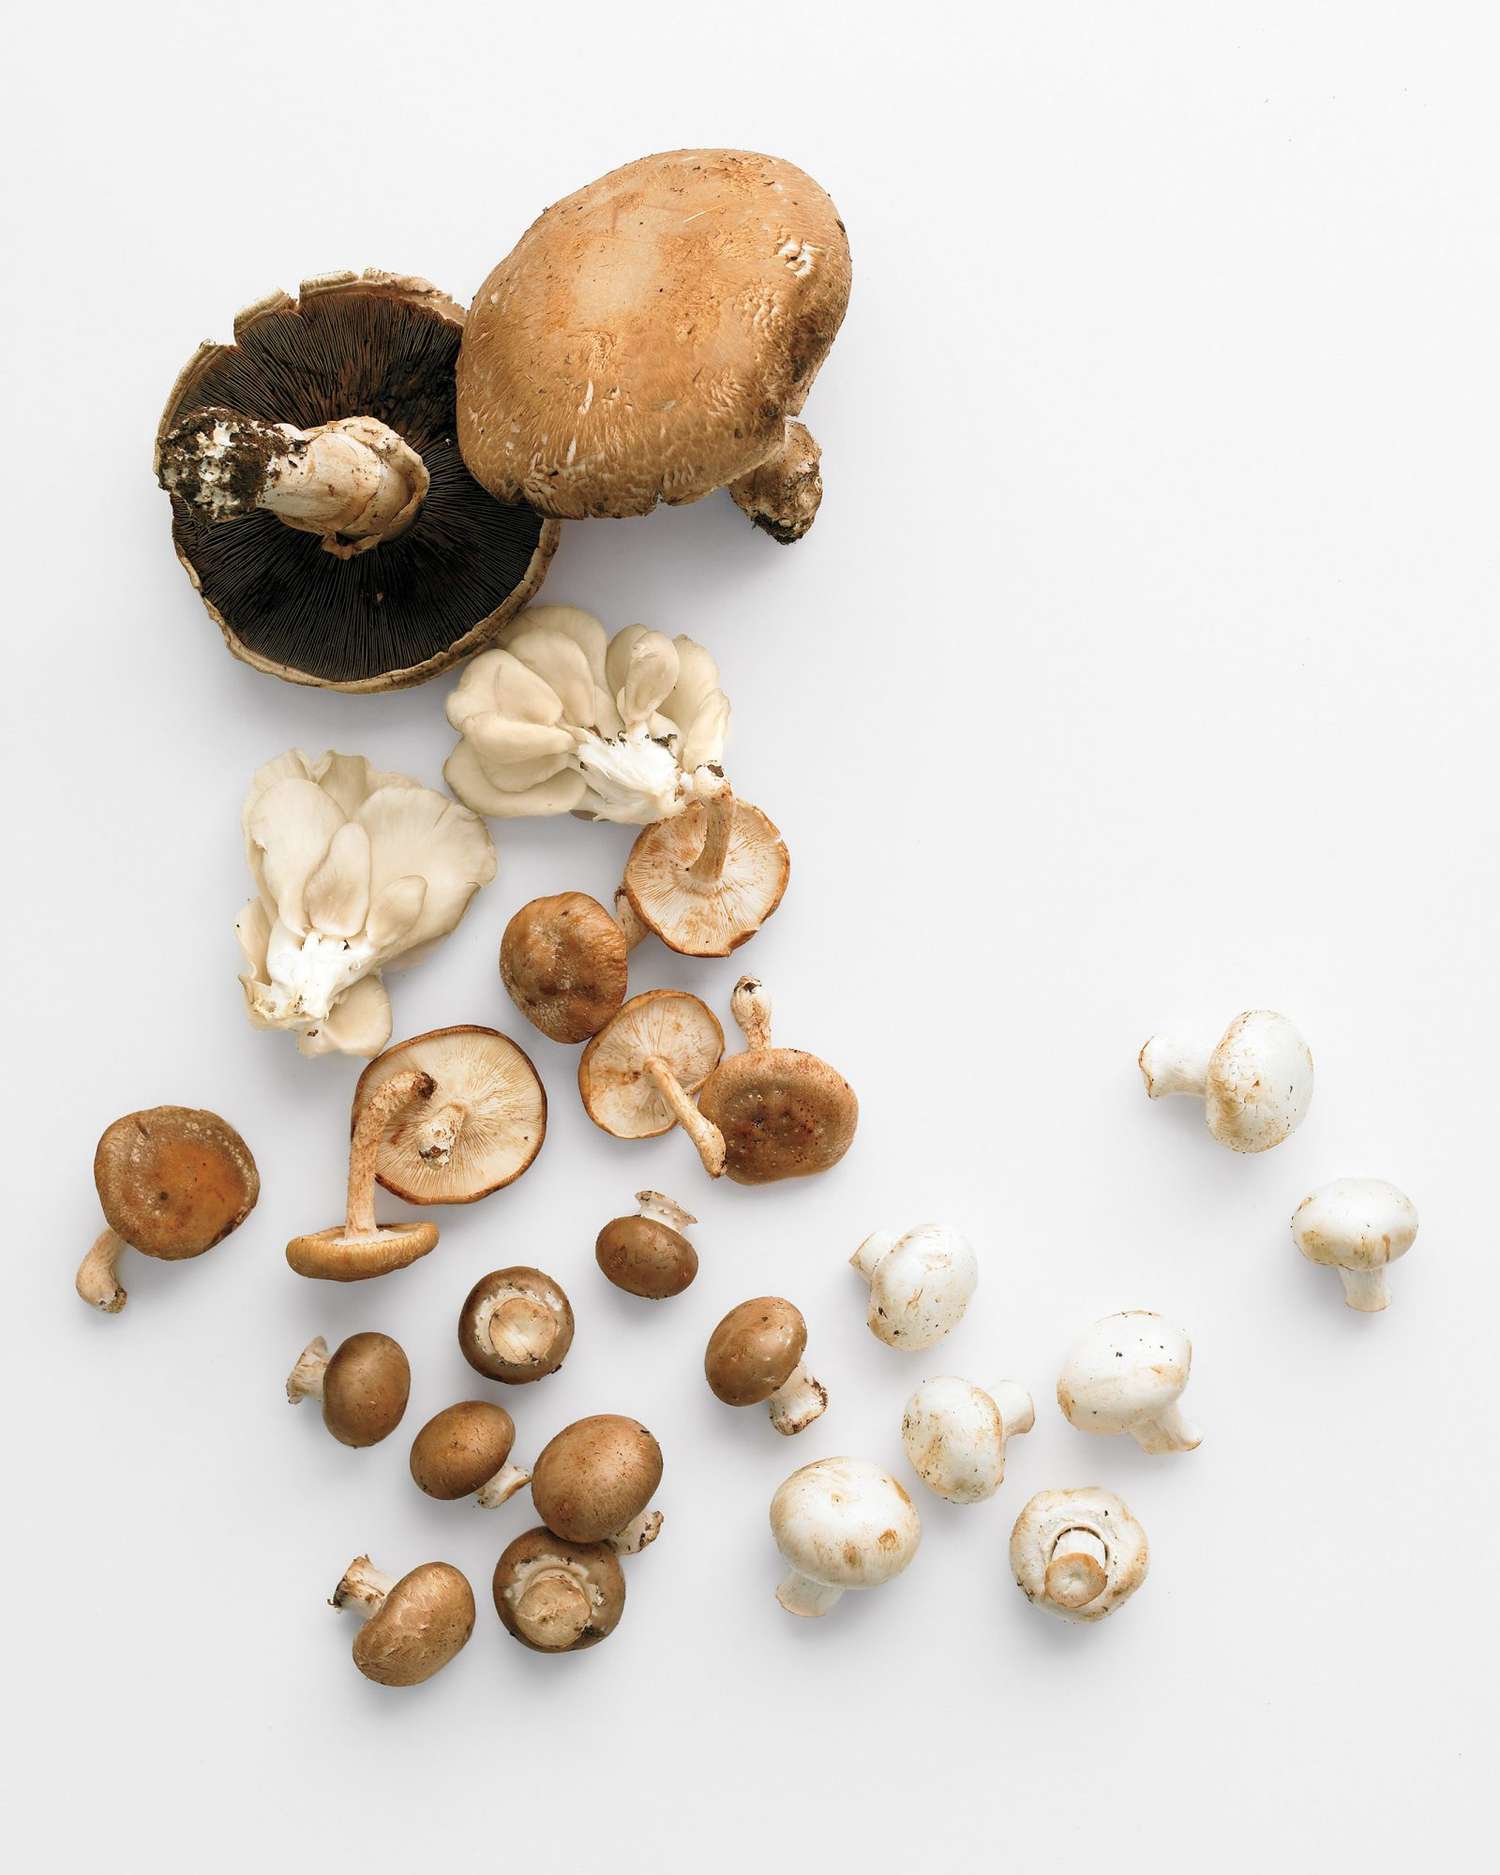 mushrooms including button, cremini, oyster, portobello, and porcini